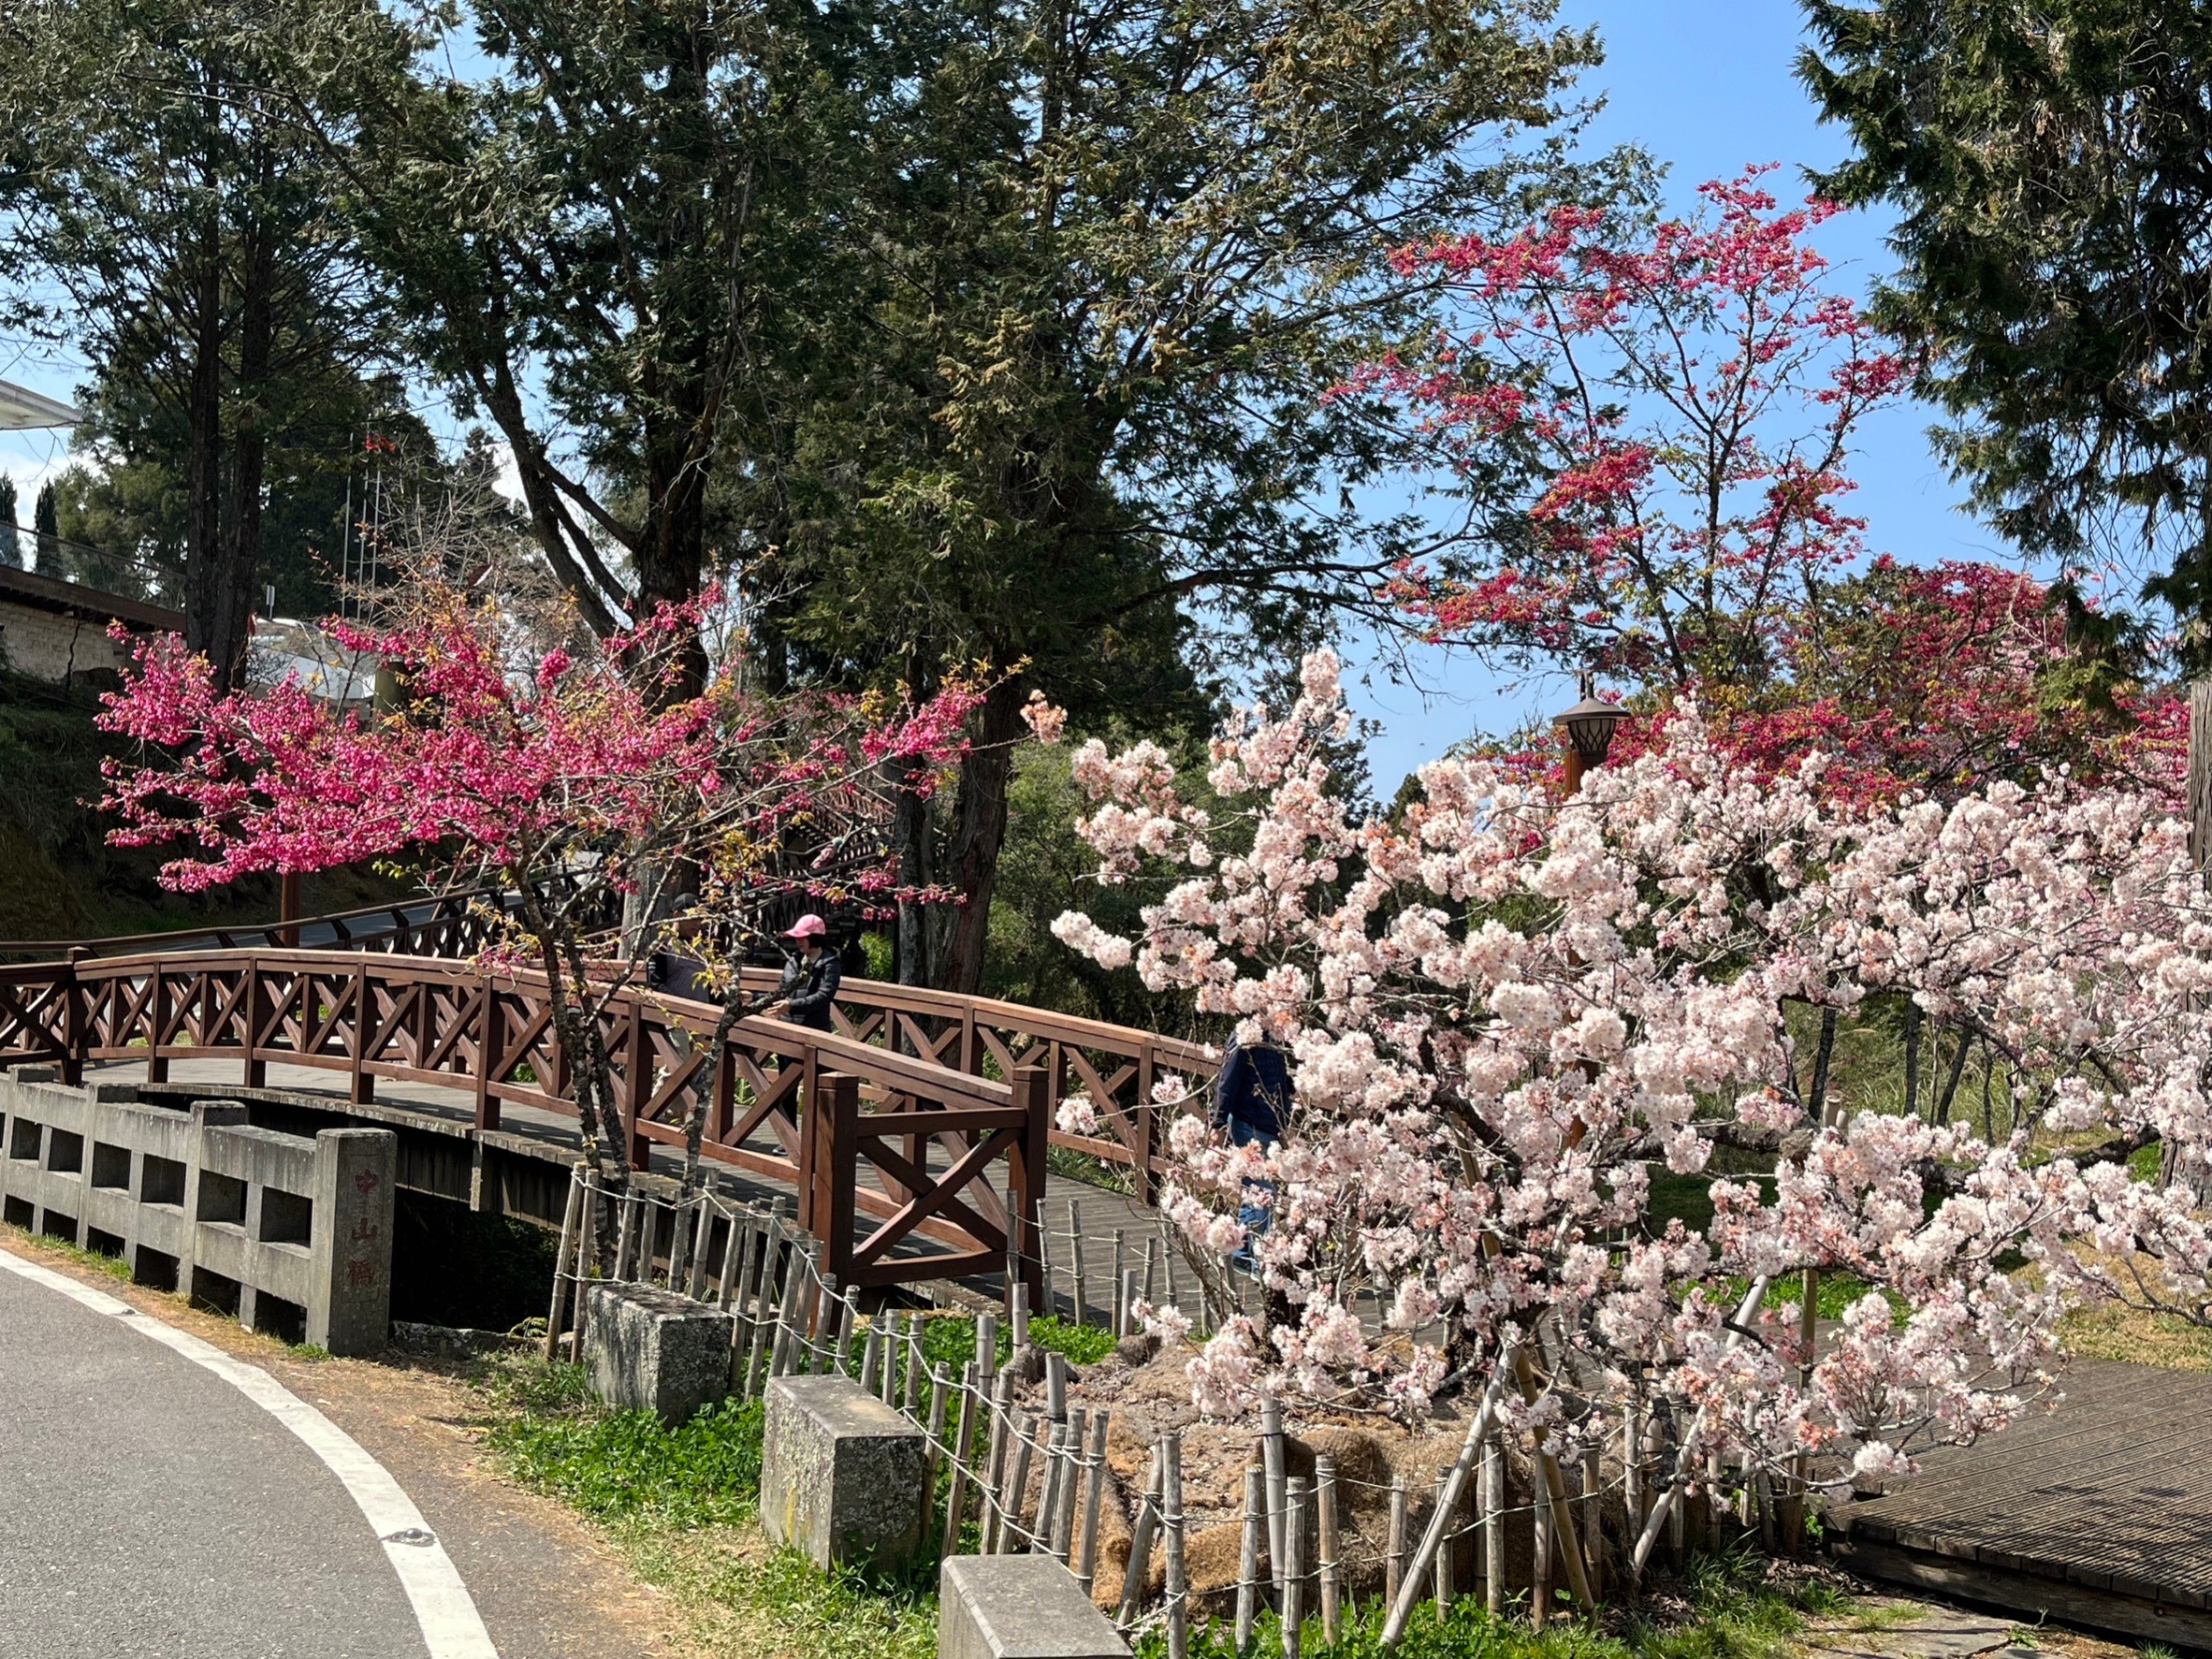 阿里山國家森林遊樂區內多種櫻花盛開中